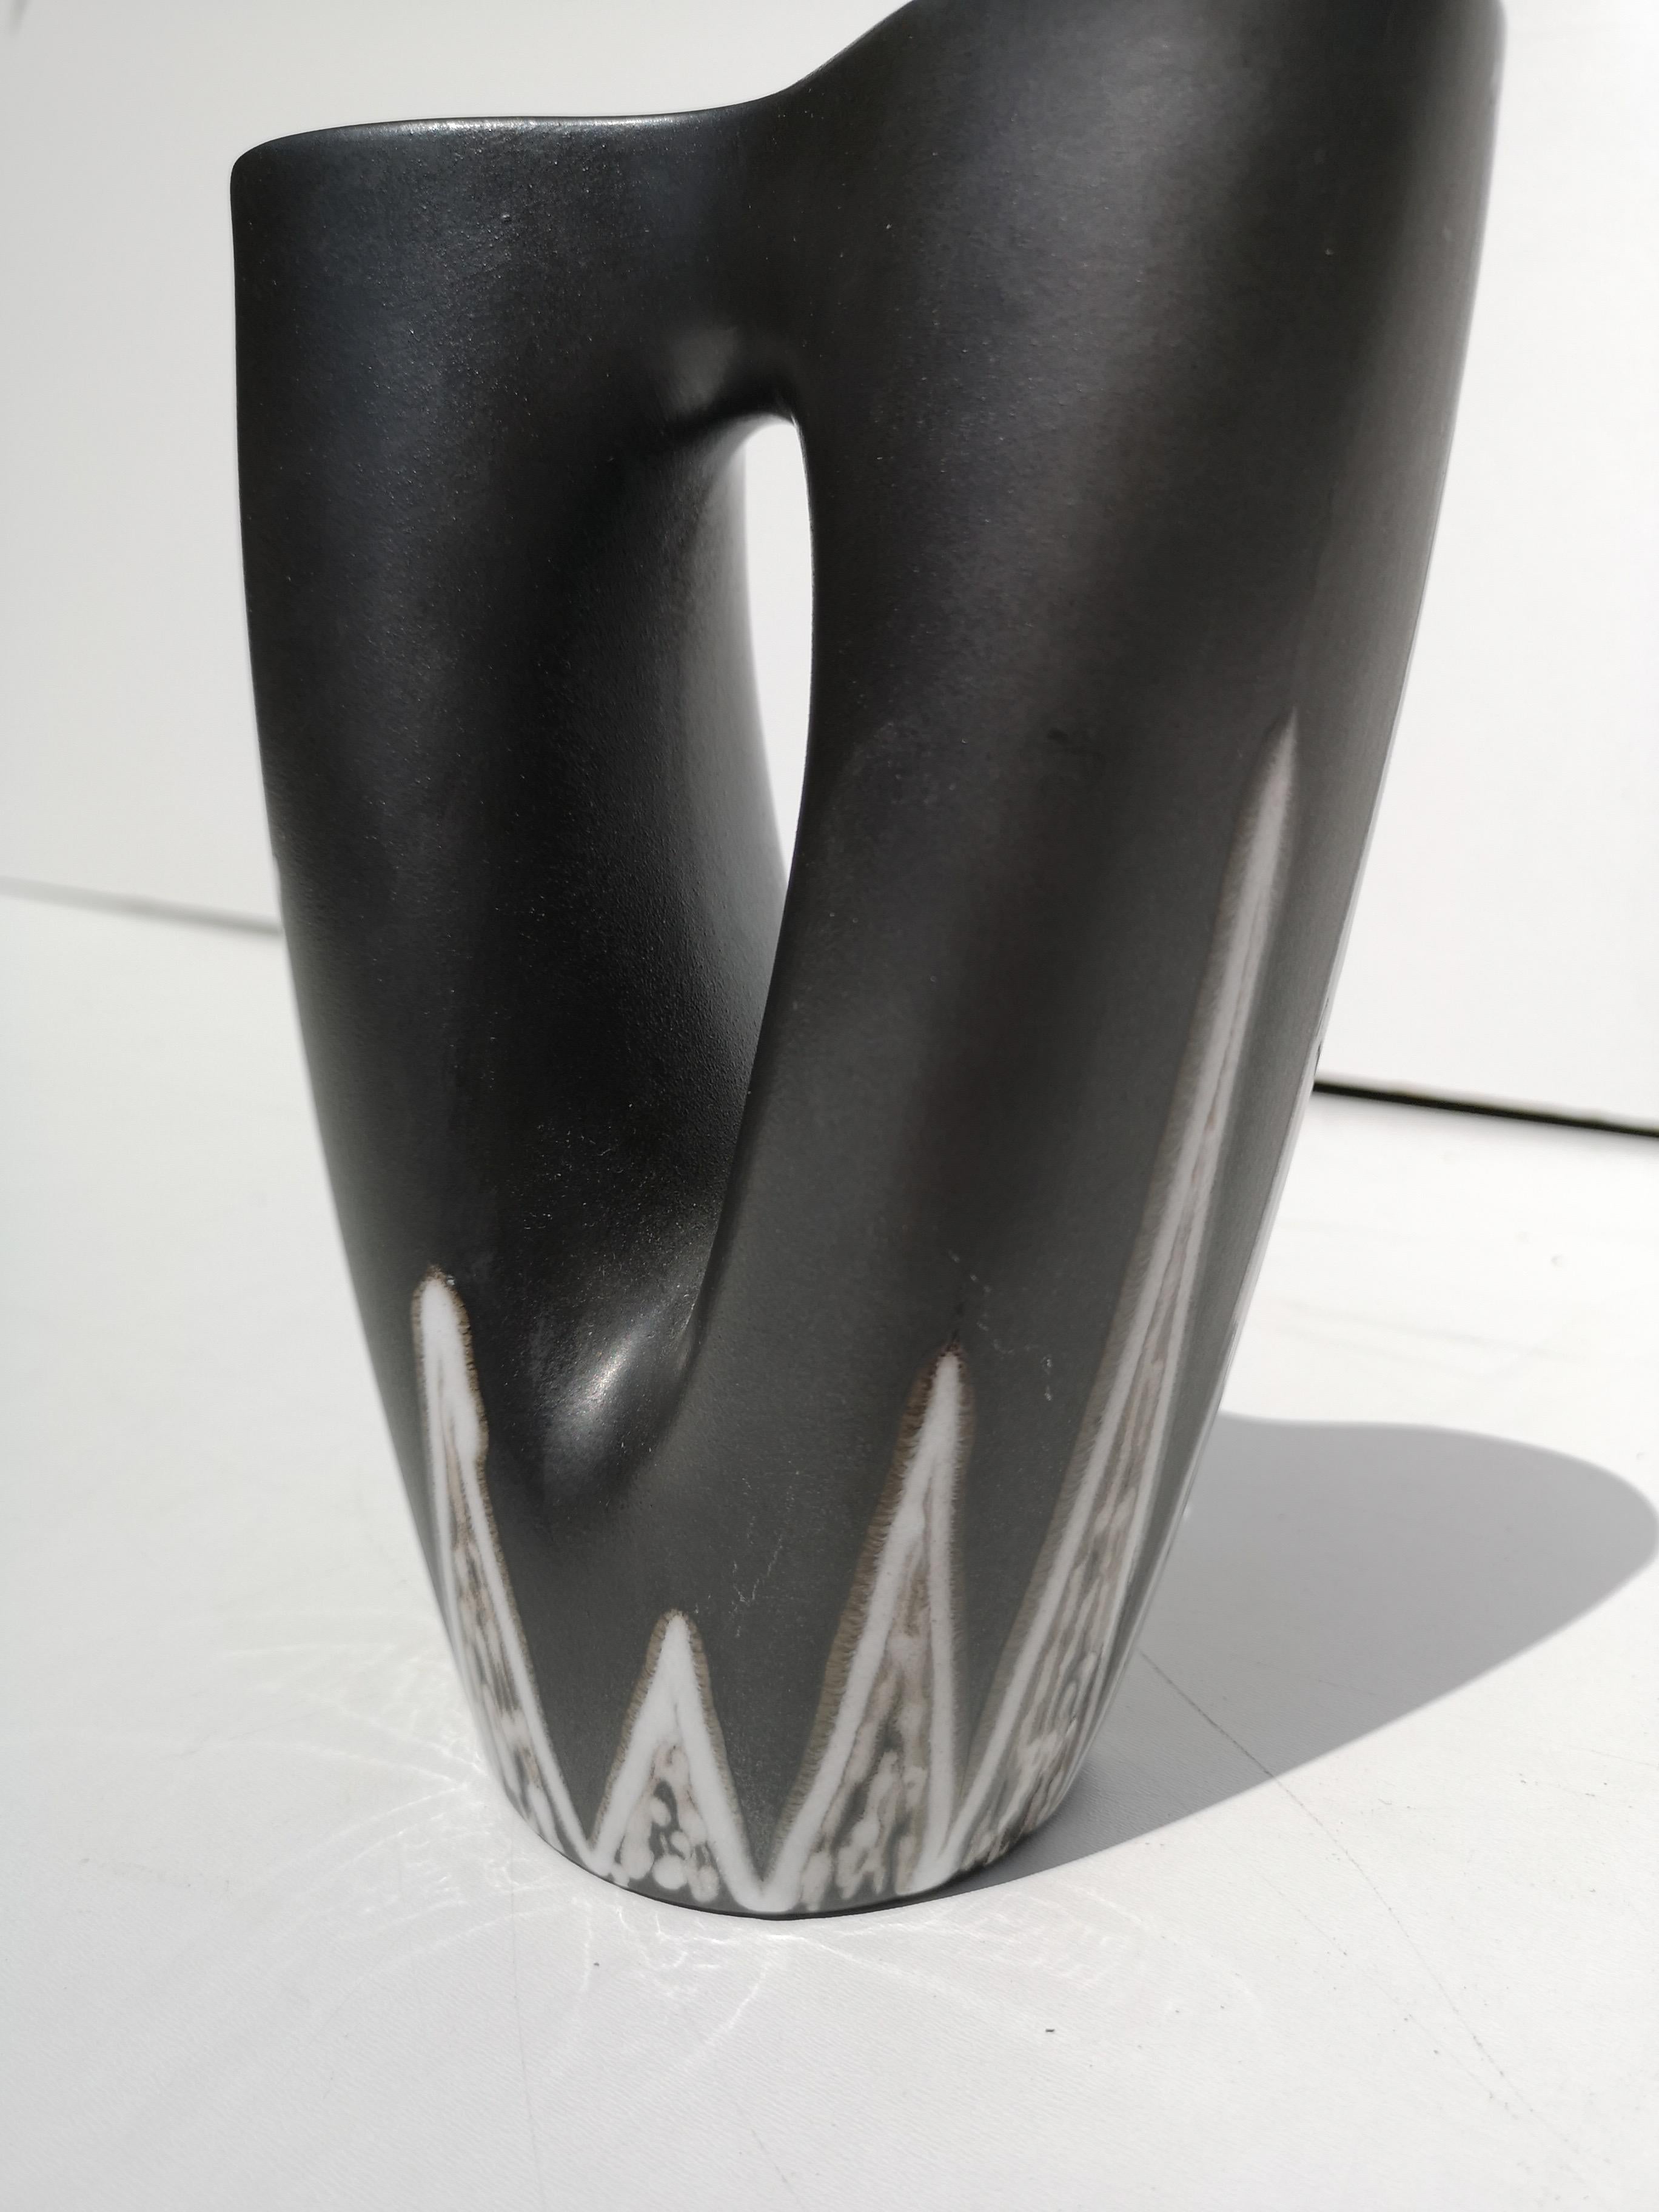 Midcentury Danish Modern Vase by Svend Aage Holm Sorensen for Soholm For Sale 1